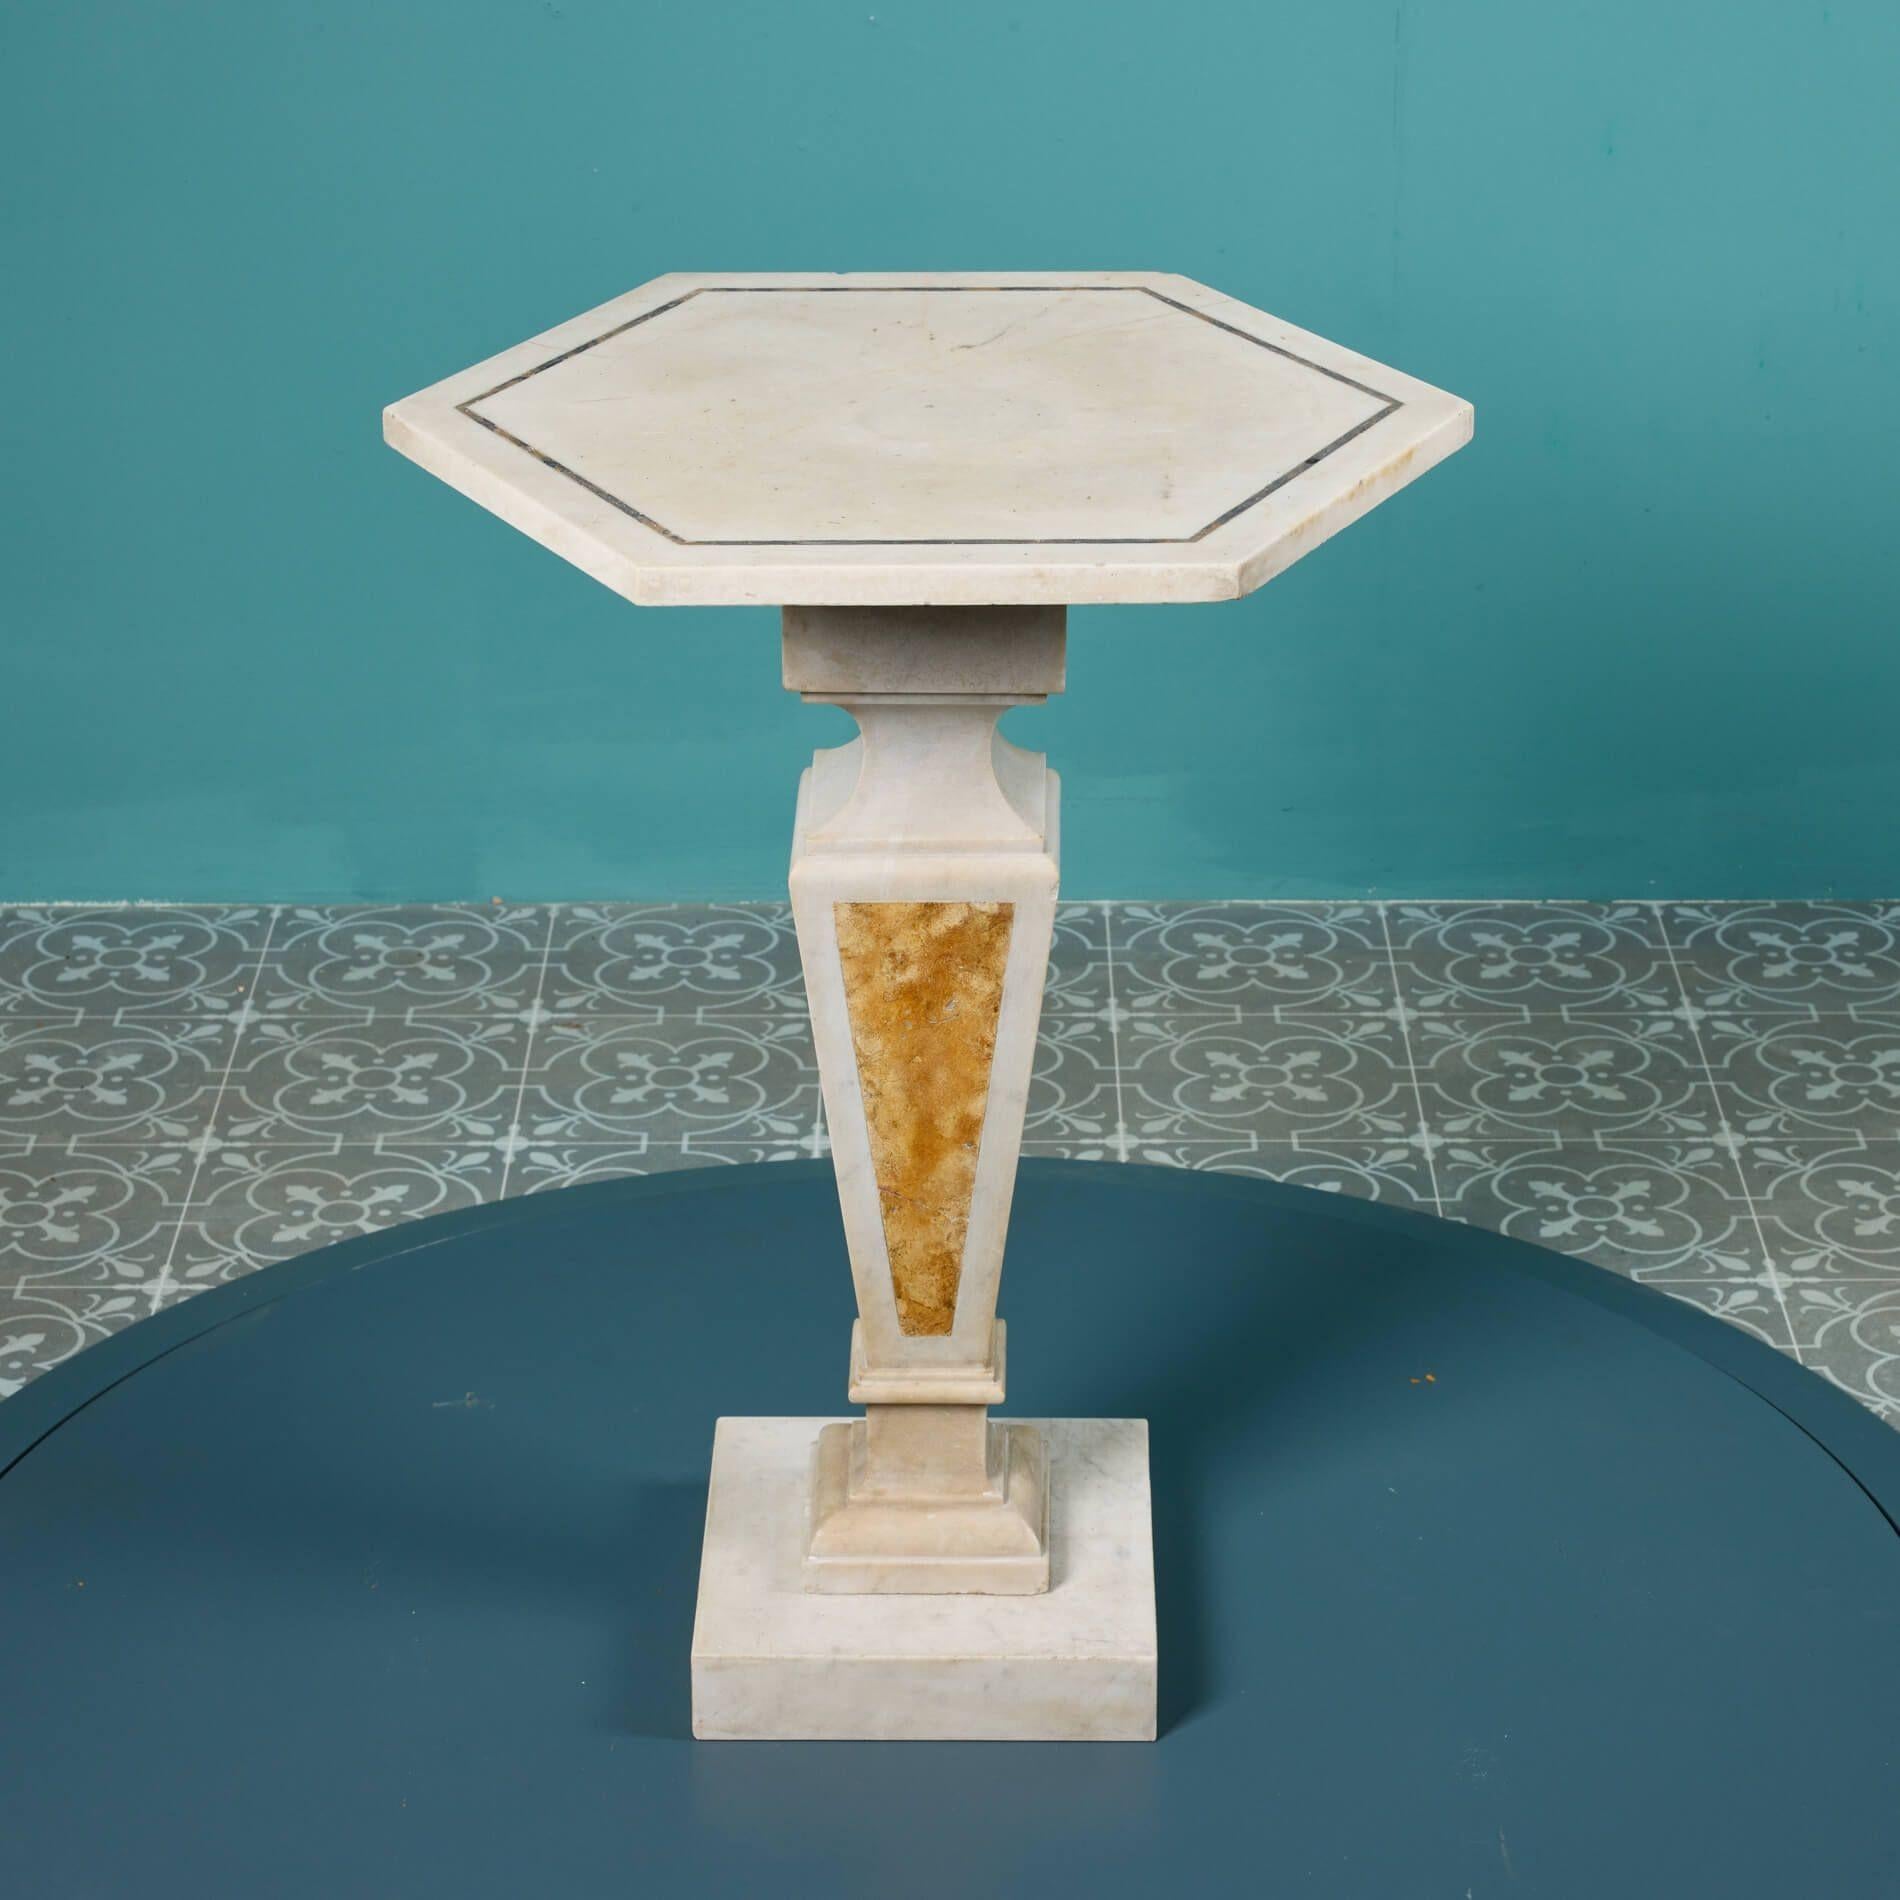 Dieser aus Italien stammende antike Marmor-Mitteltisch ist über 200 Jahre alt und stammt aus den frühen 1800er Jahren. Vielleicht zierte er einst die sonnenbeschienenen Säle einer italienischen Villa aus dem 19. Jahrhundert und saß elegant neben